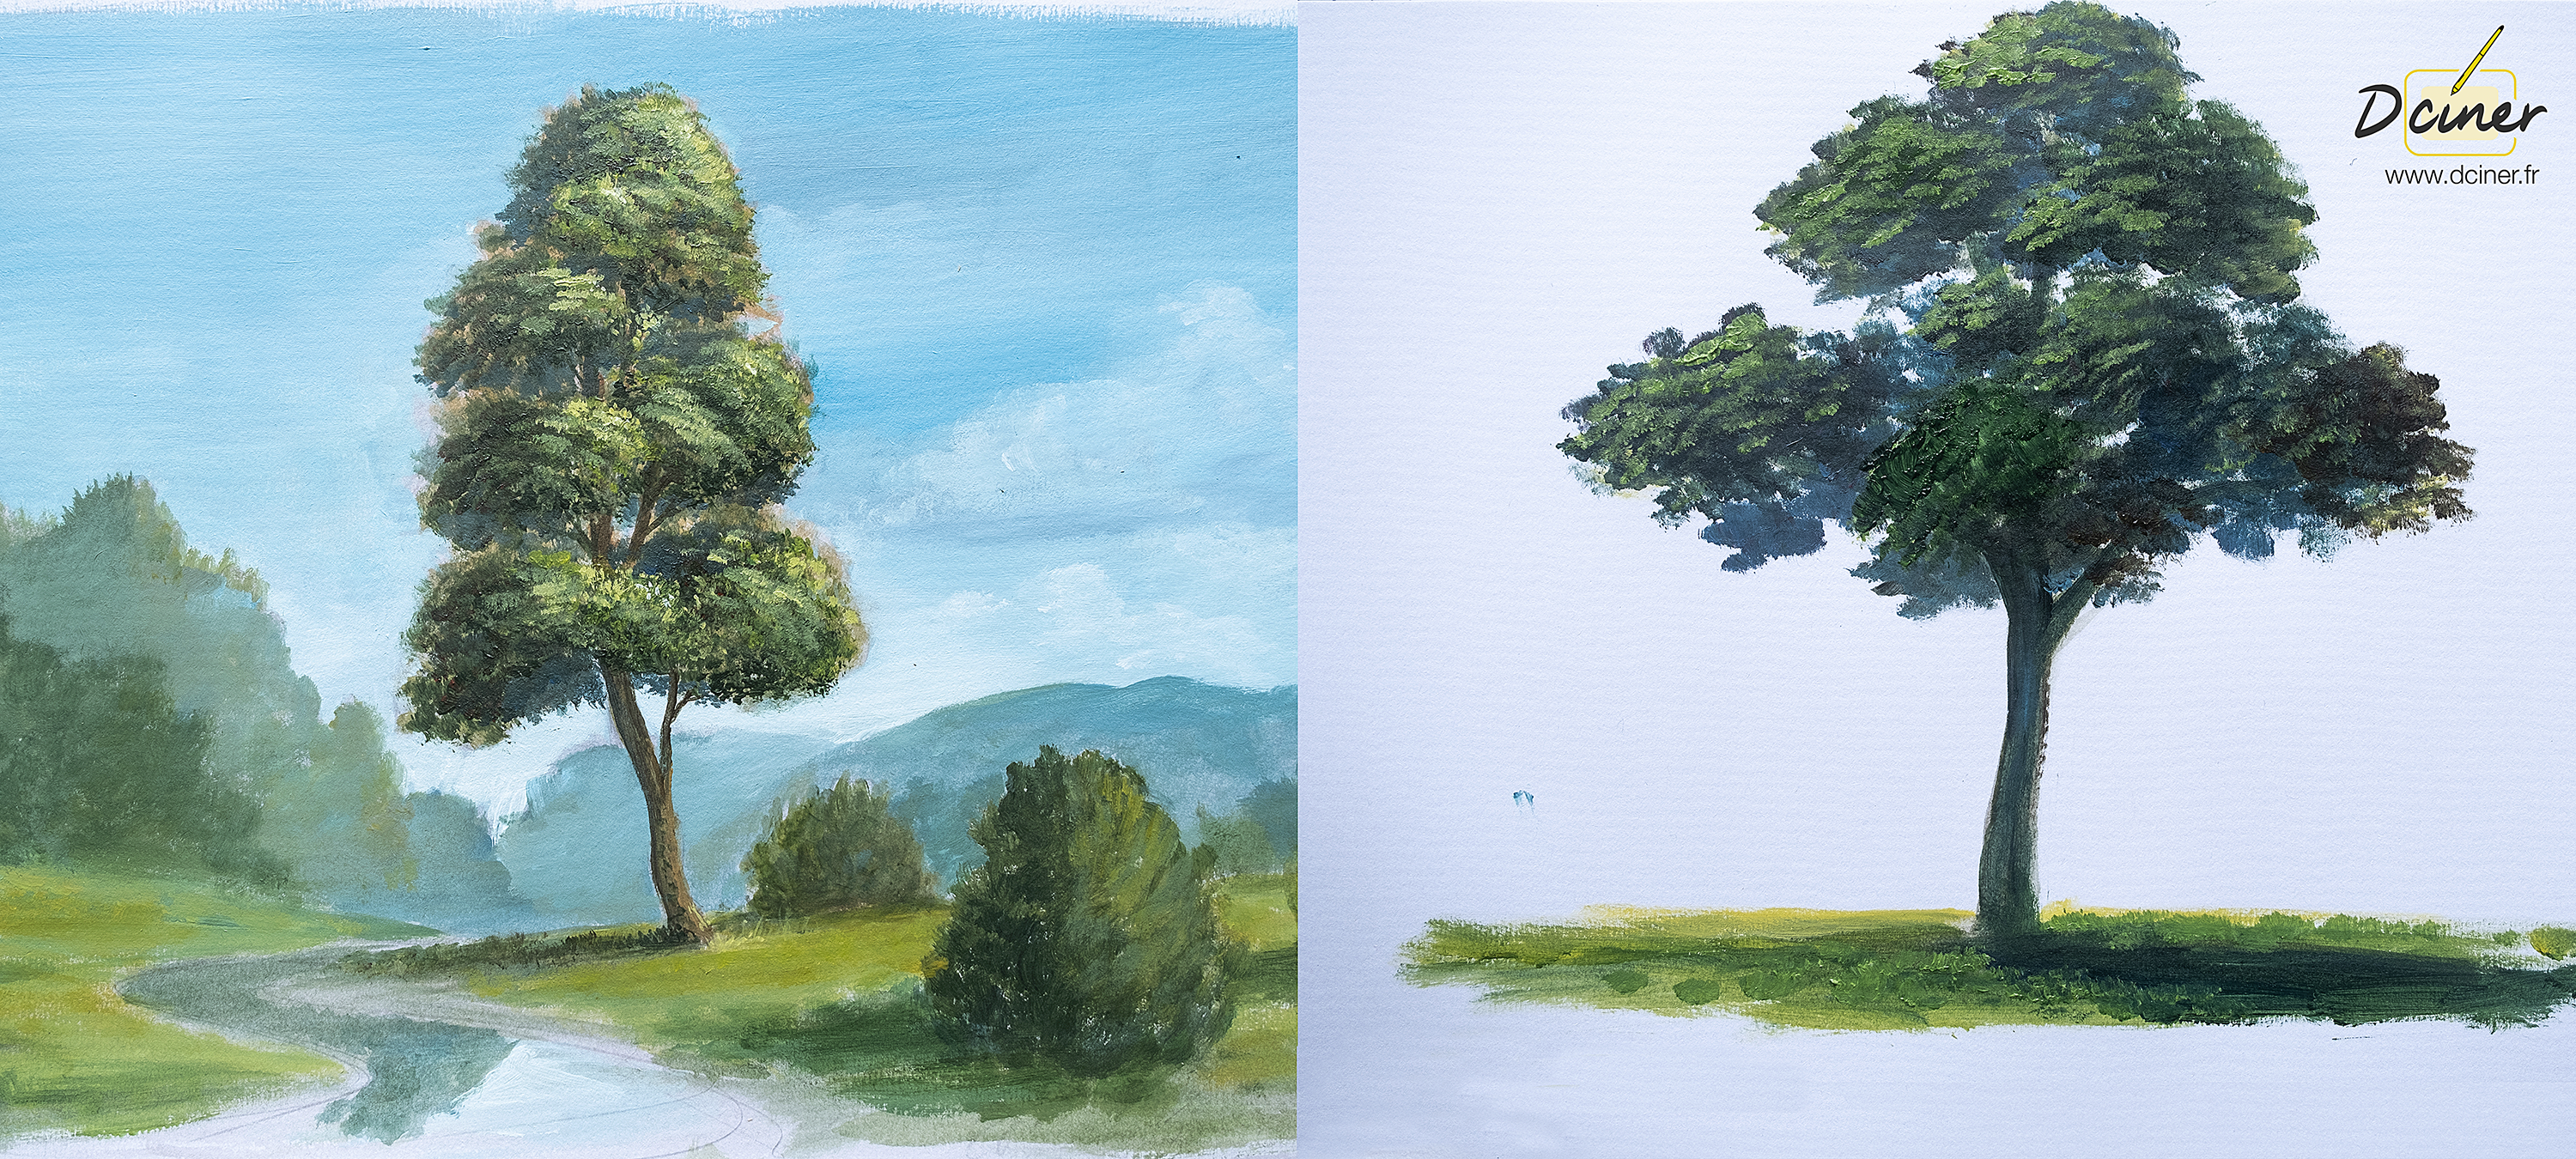 Les étapes pour peindre un arbre